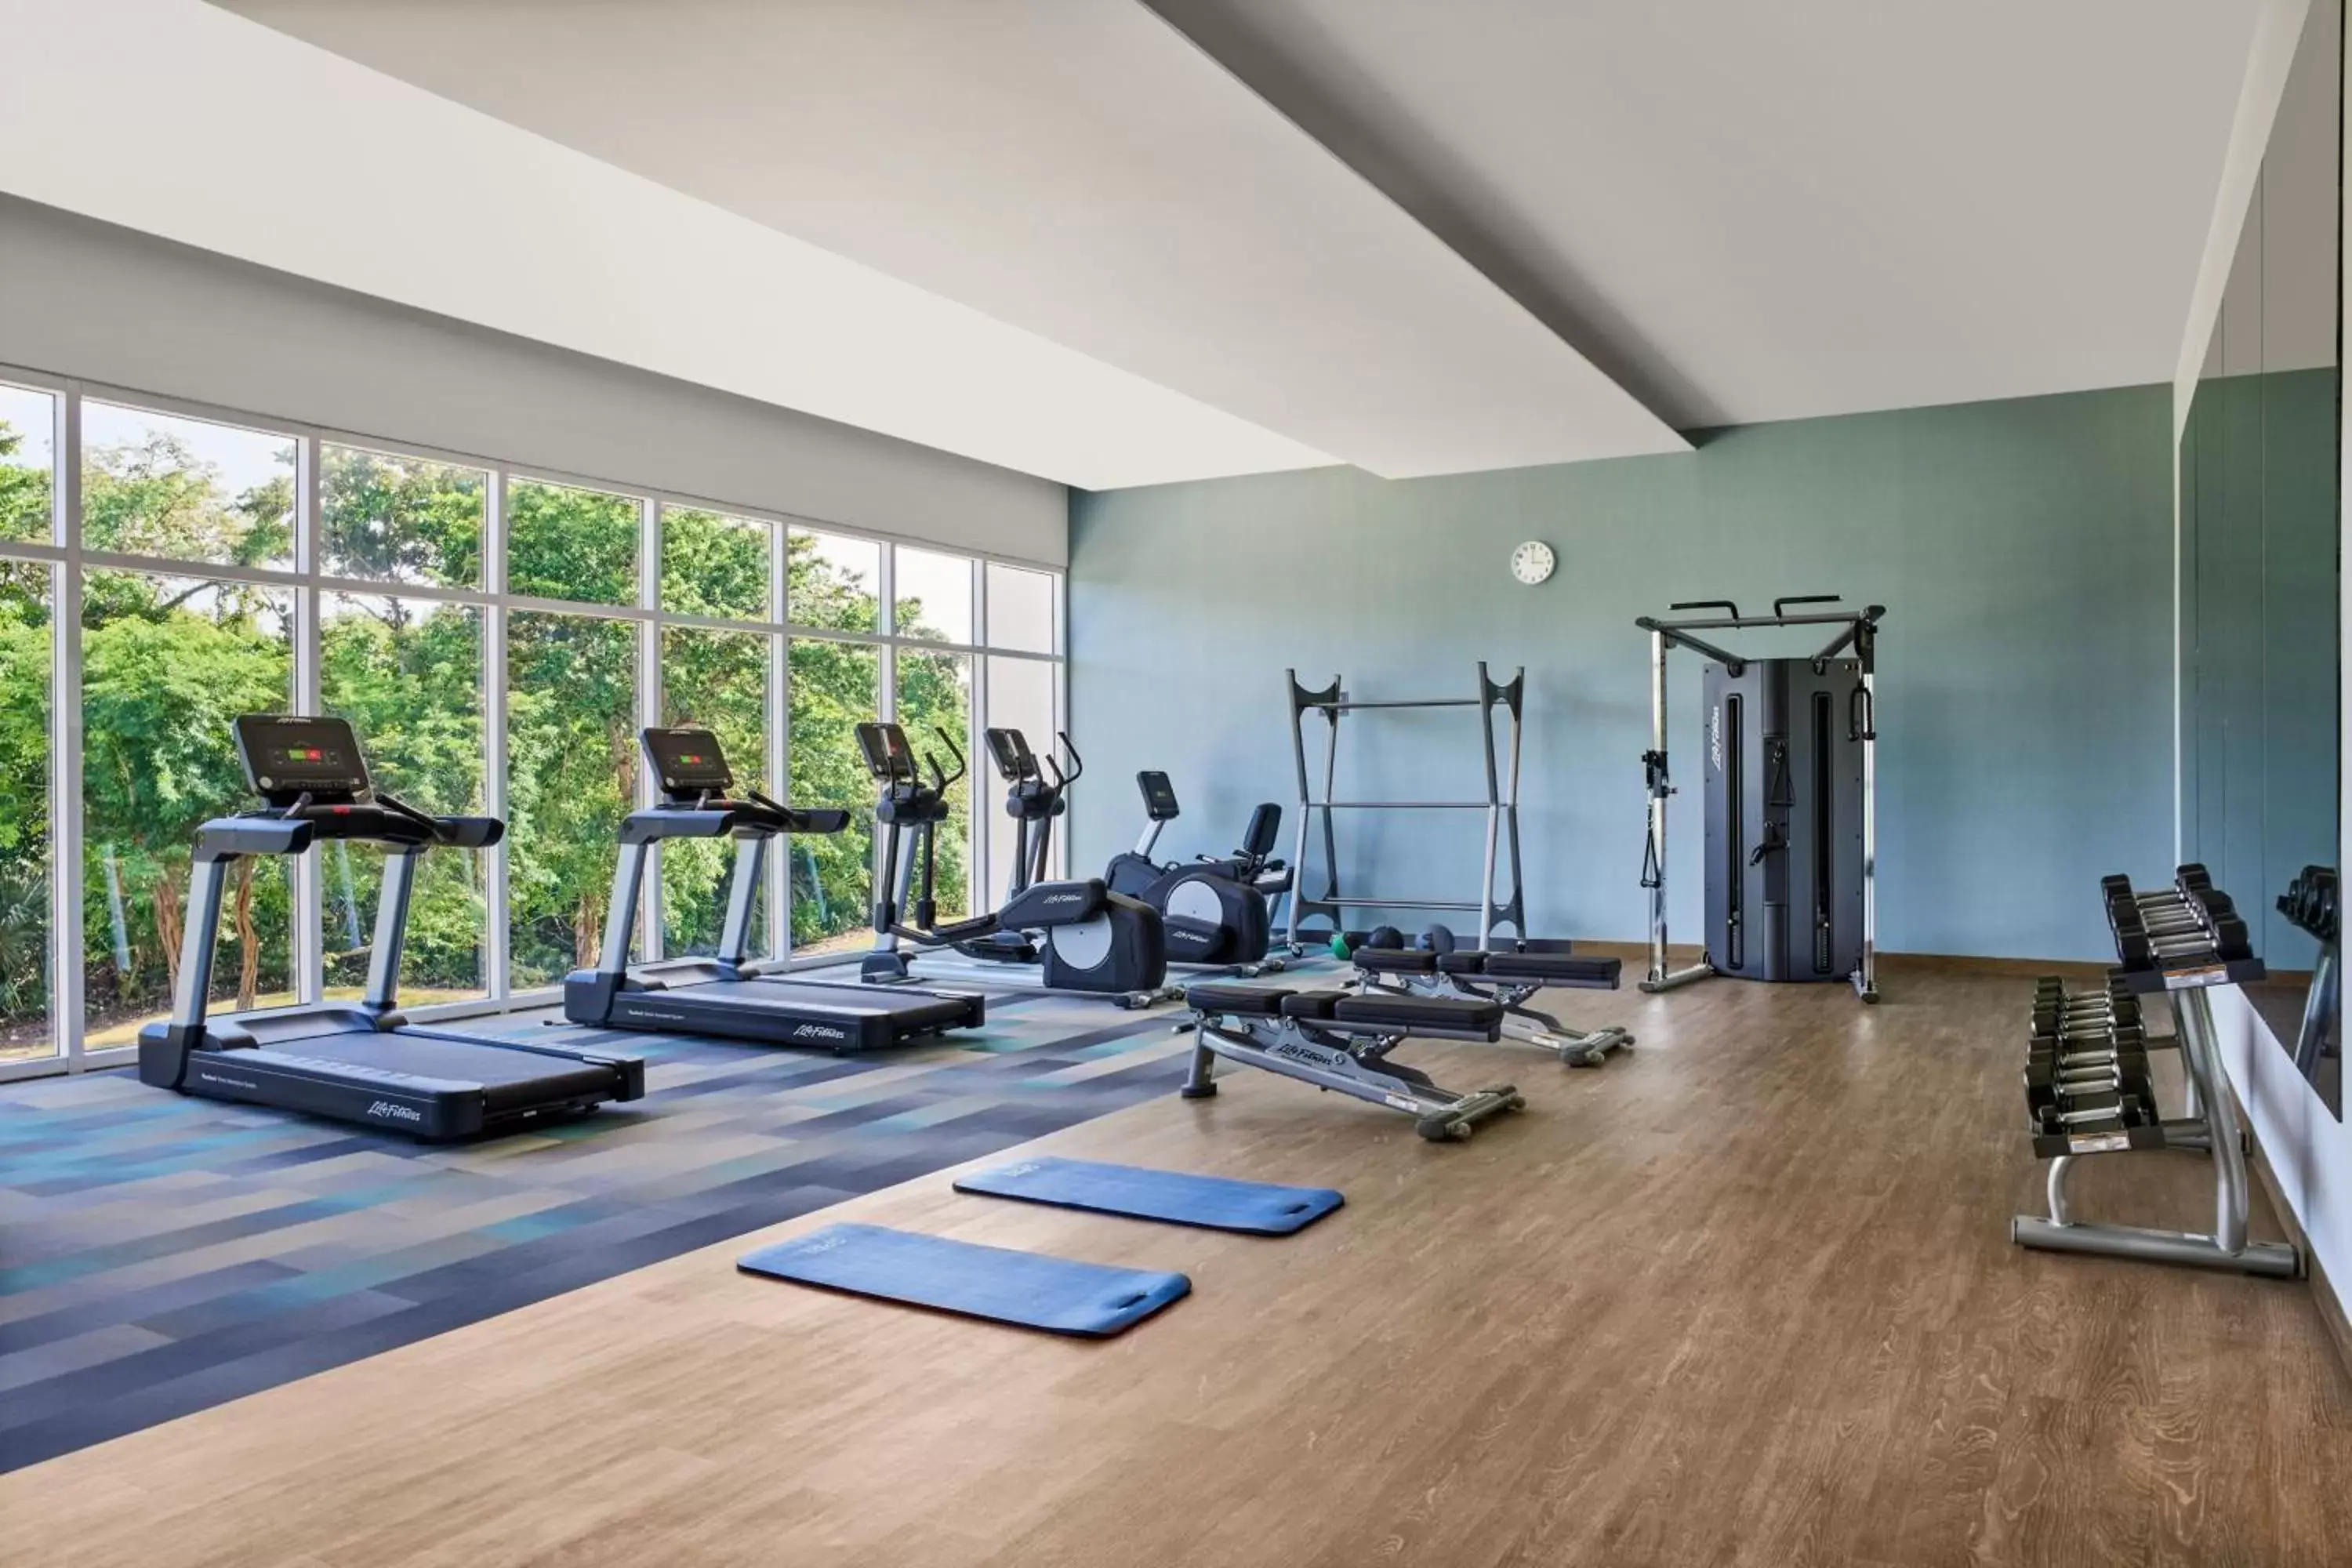 Fitness centre/facilities, Fitness Center/Facilities in Residence Inn by Marriott Playa del Carmen